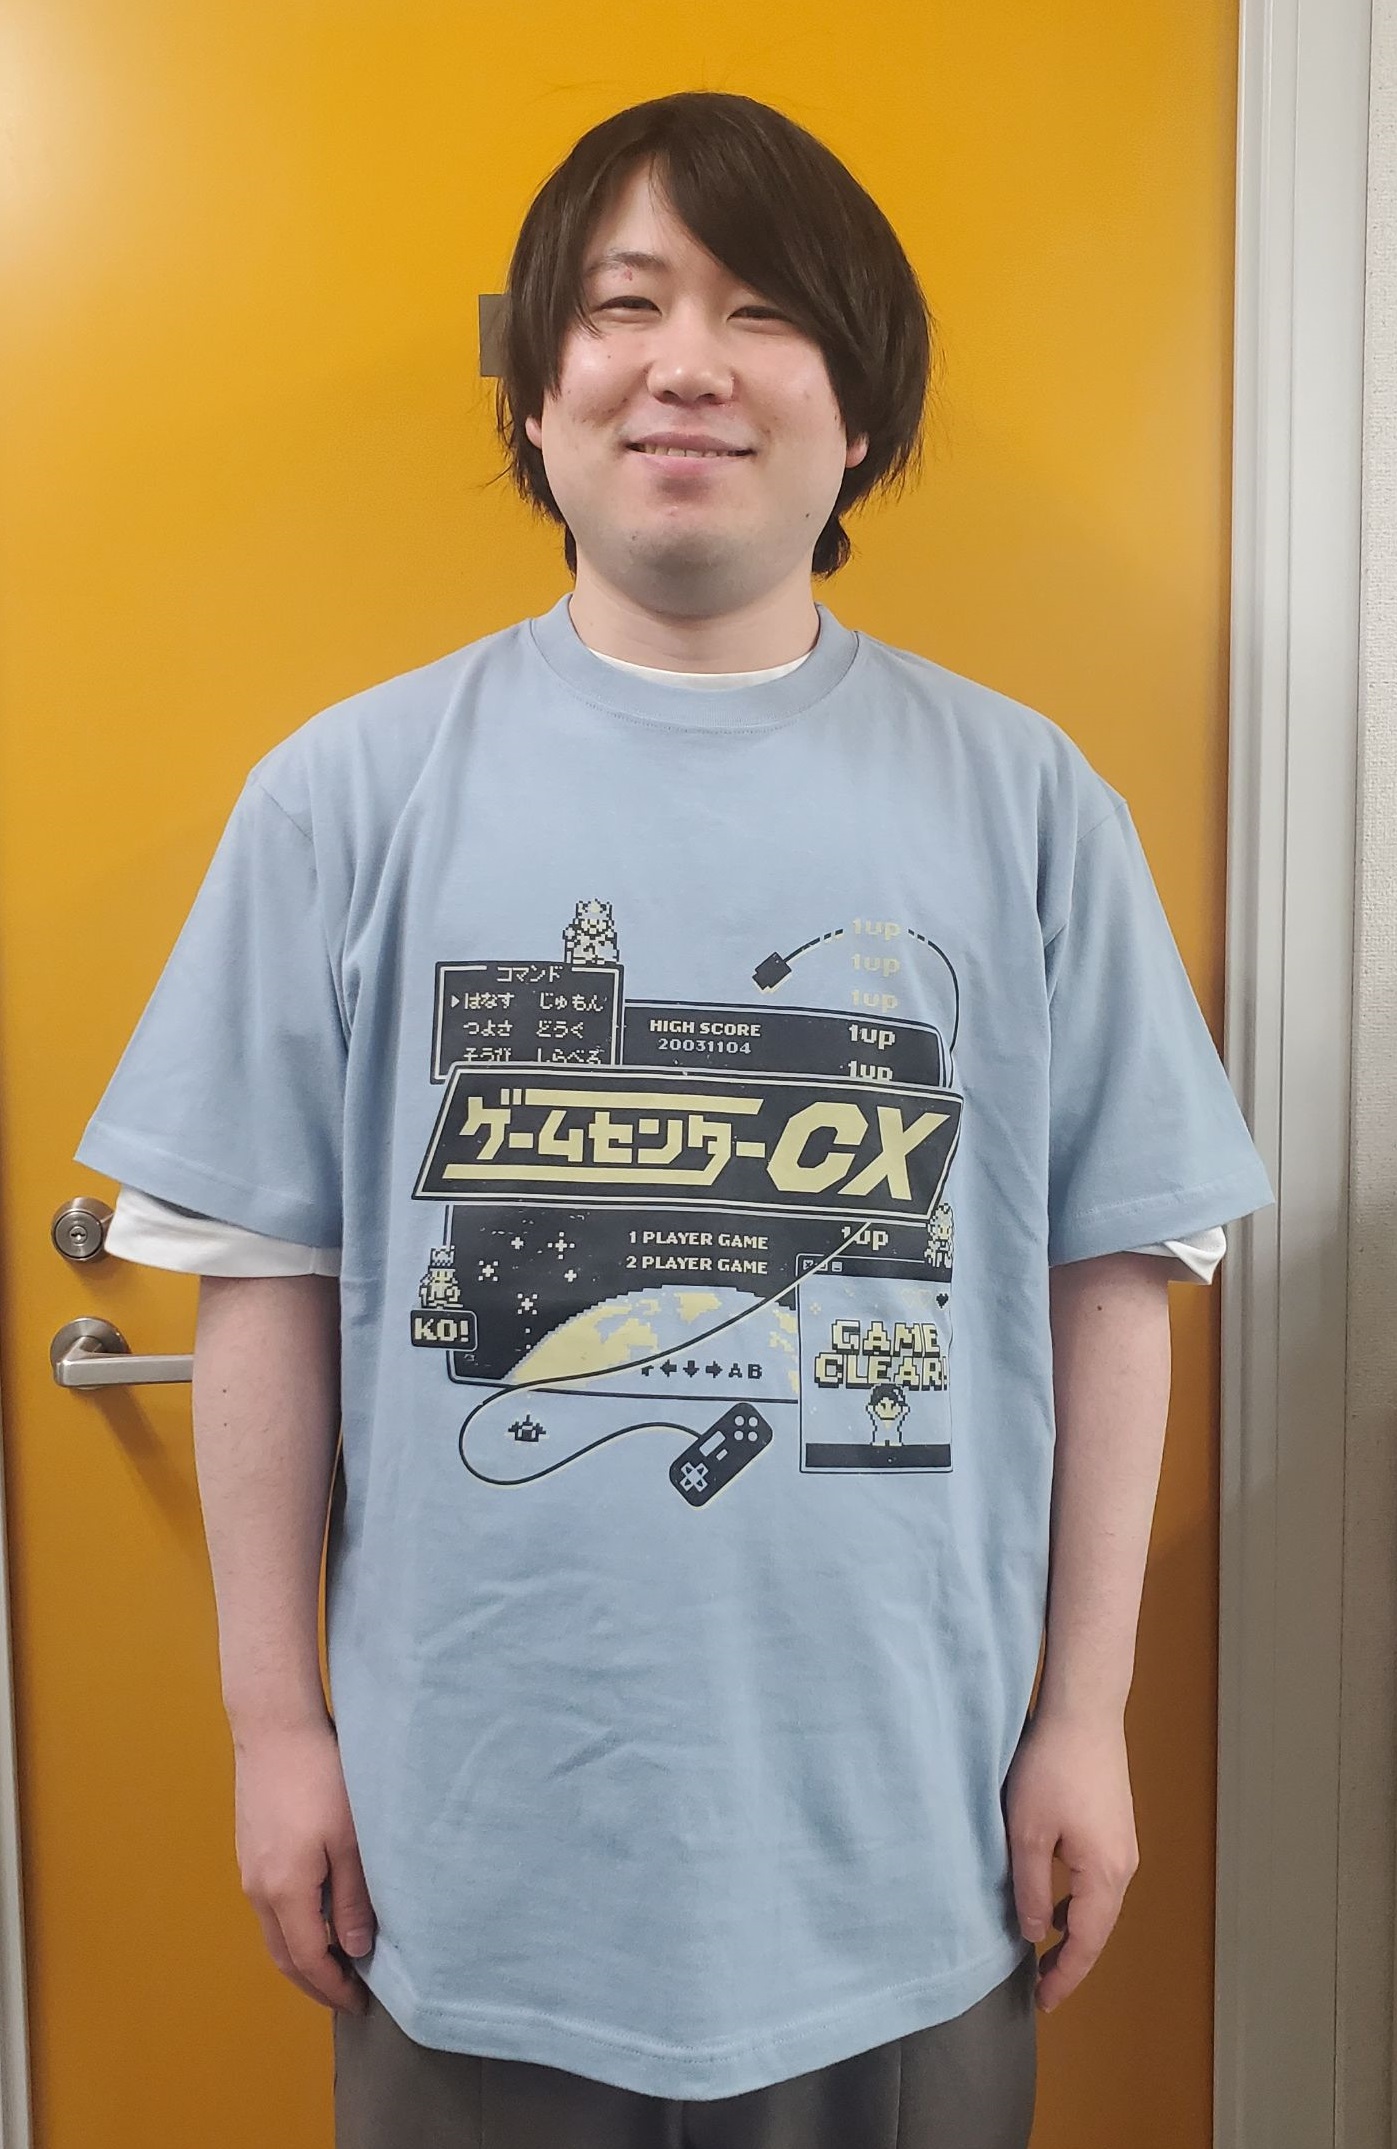 公式】ゲームセンターCX on X: 